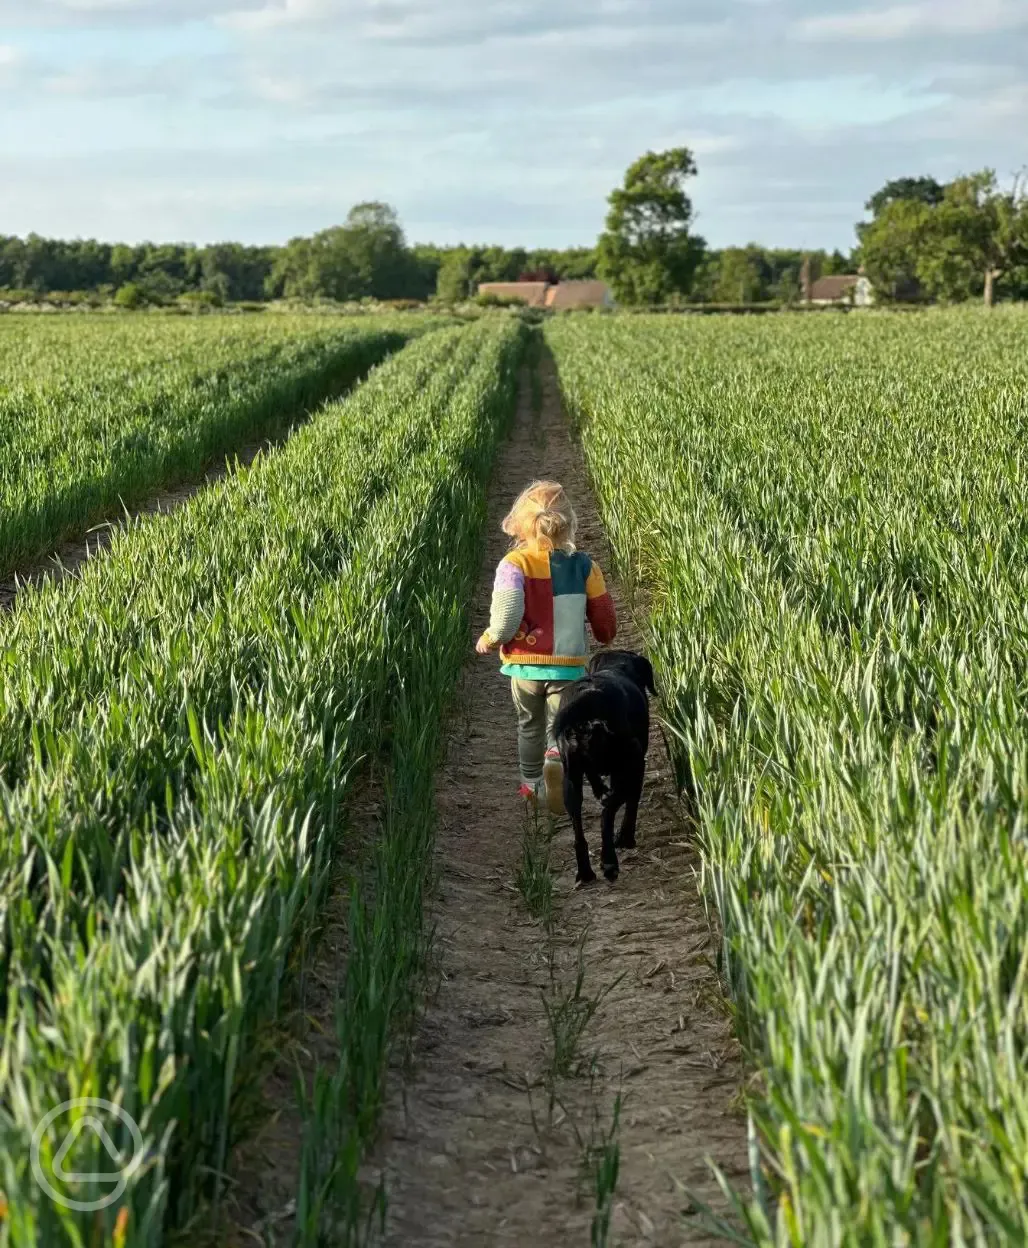 Children running through field with dog